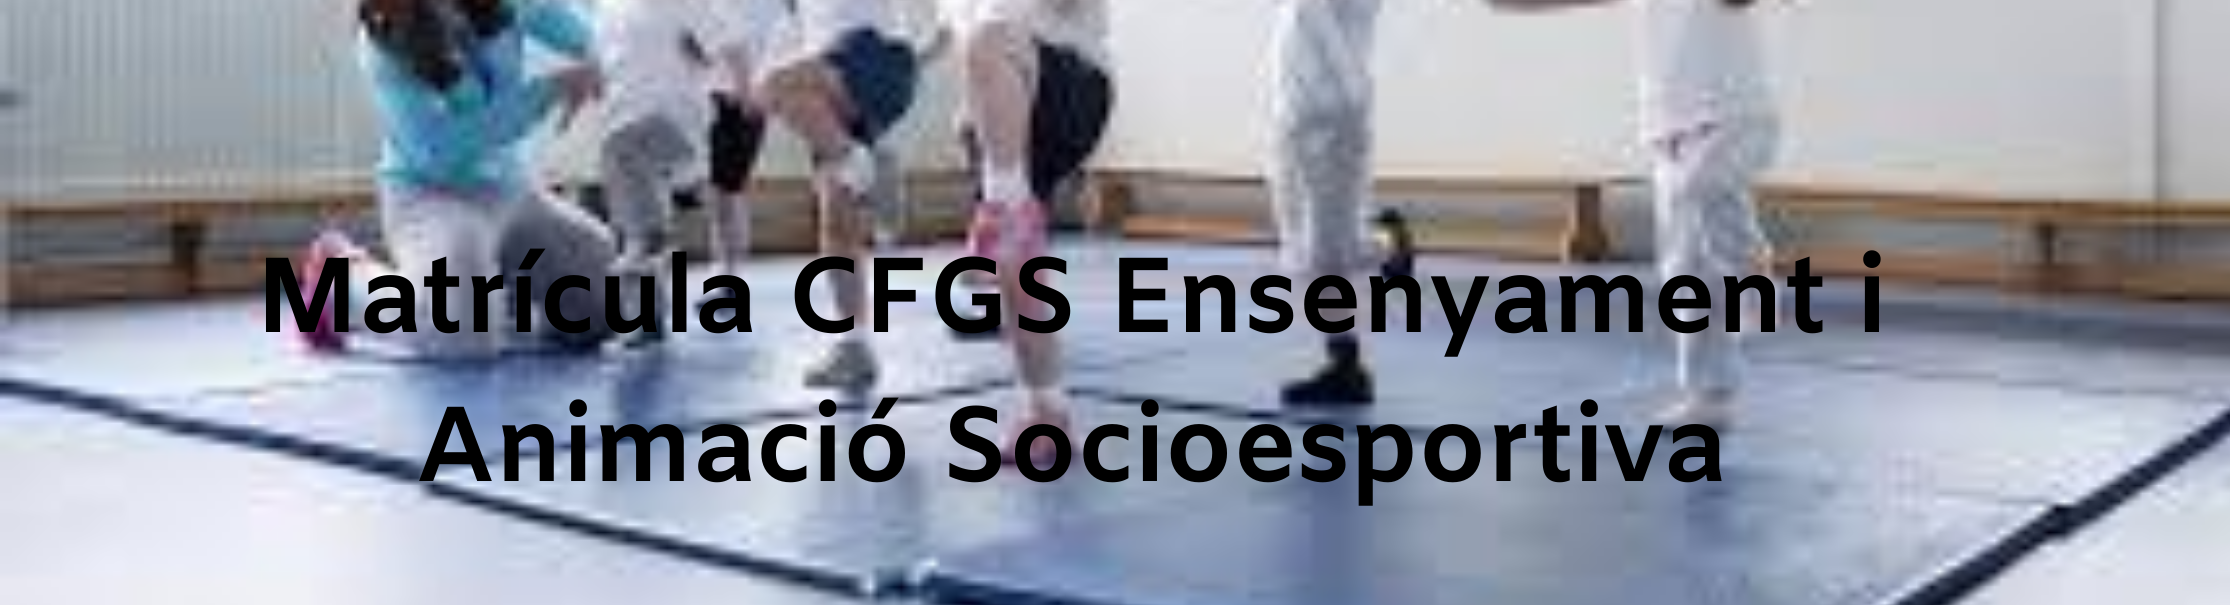 Matrícula CFGS Animació Socioesportiva banner